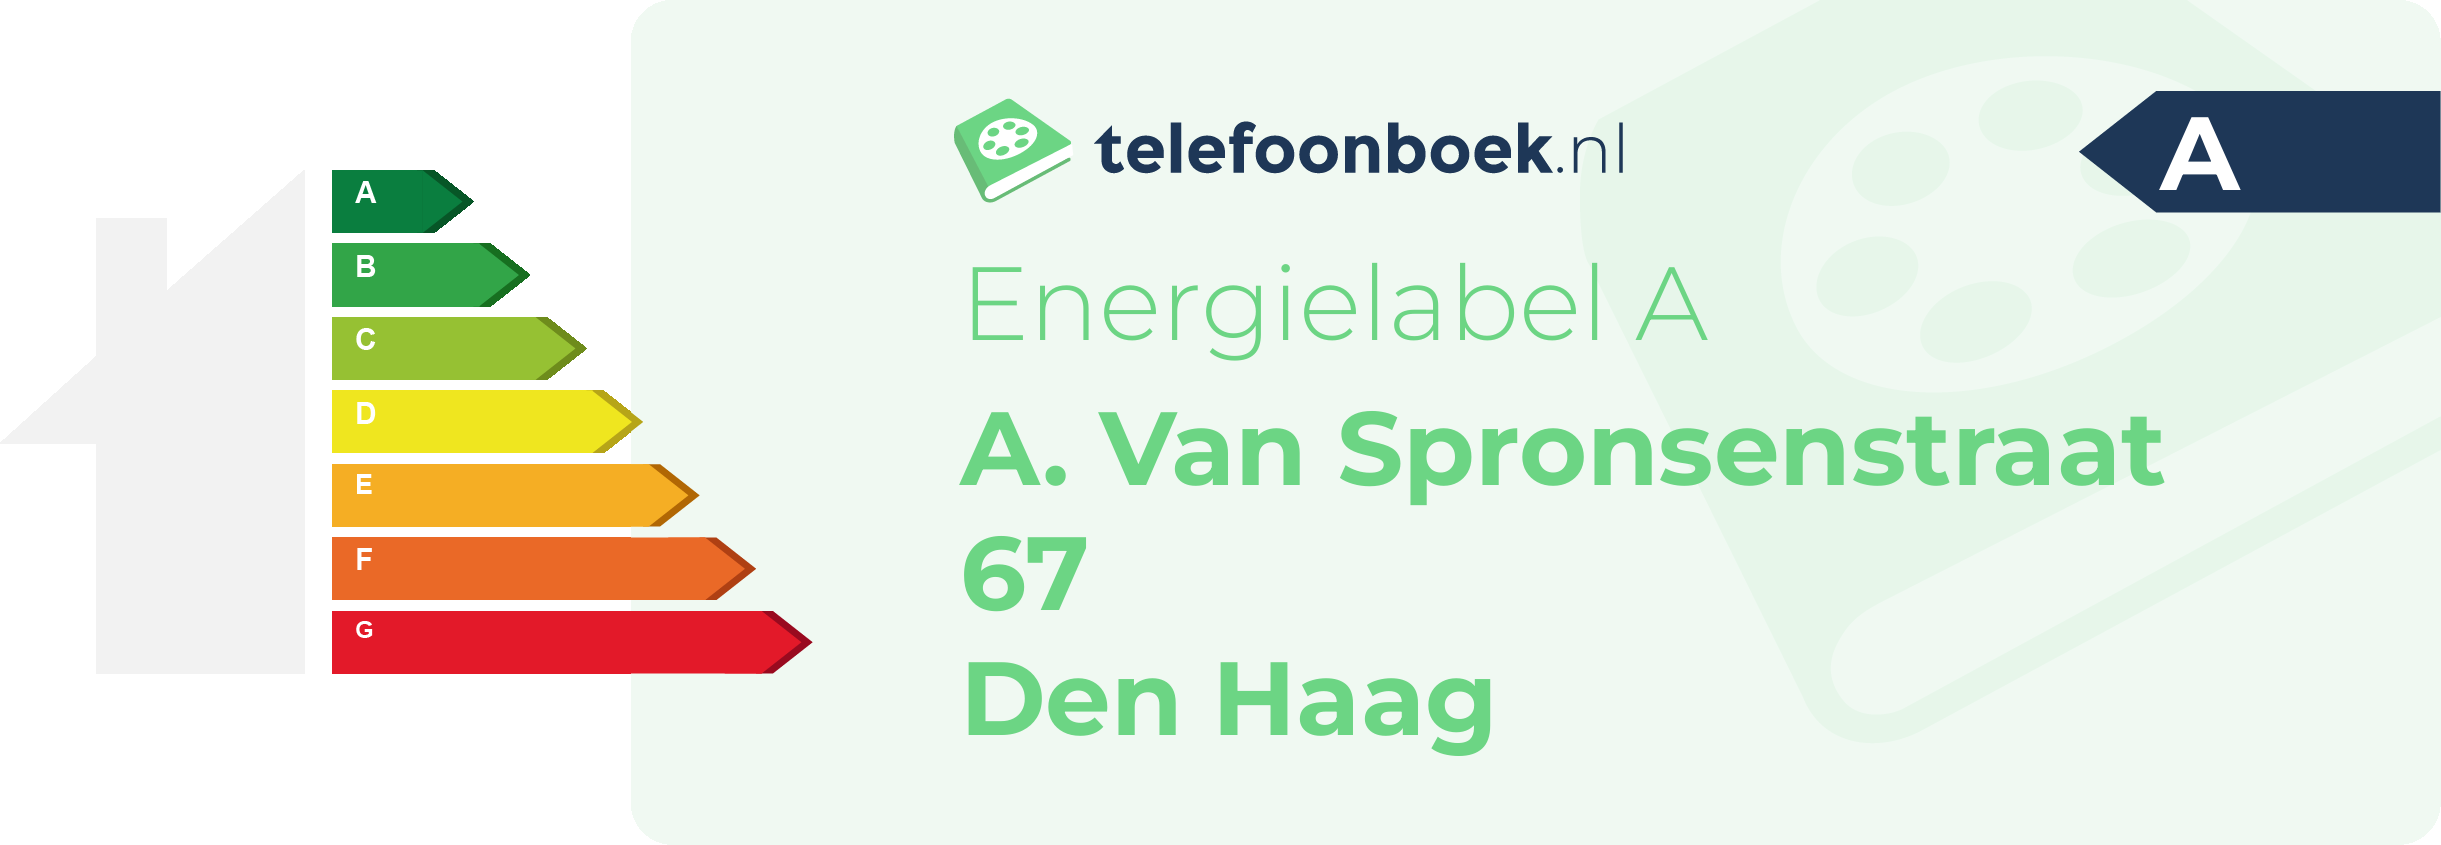 Energielabel A. Van Spronsenstraat 67 Den Haag